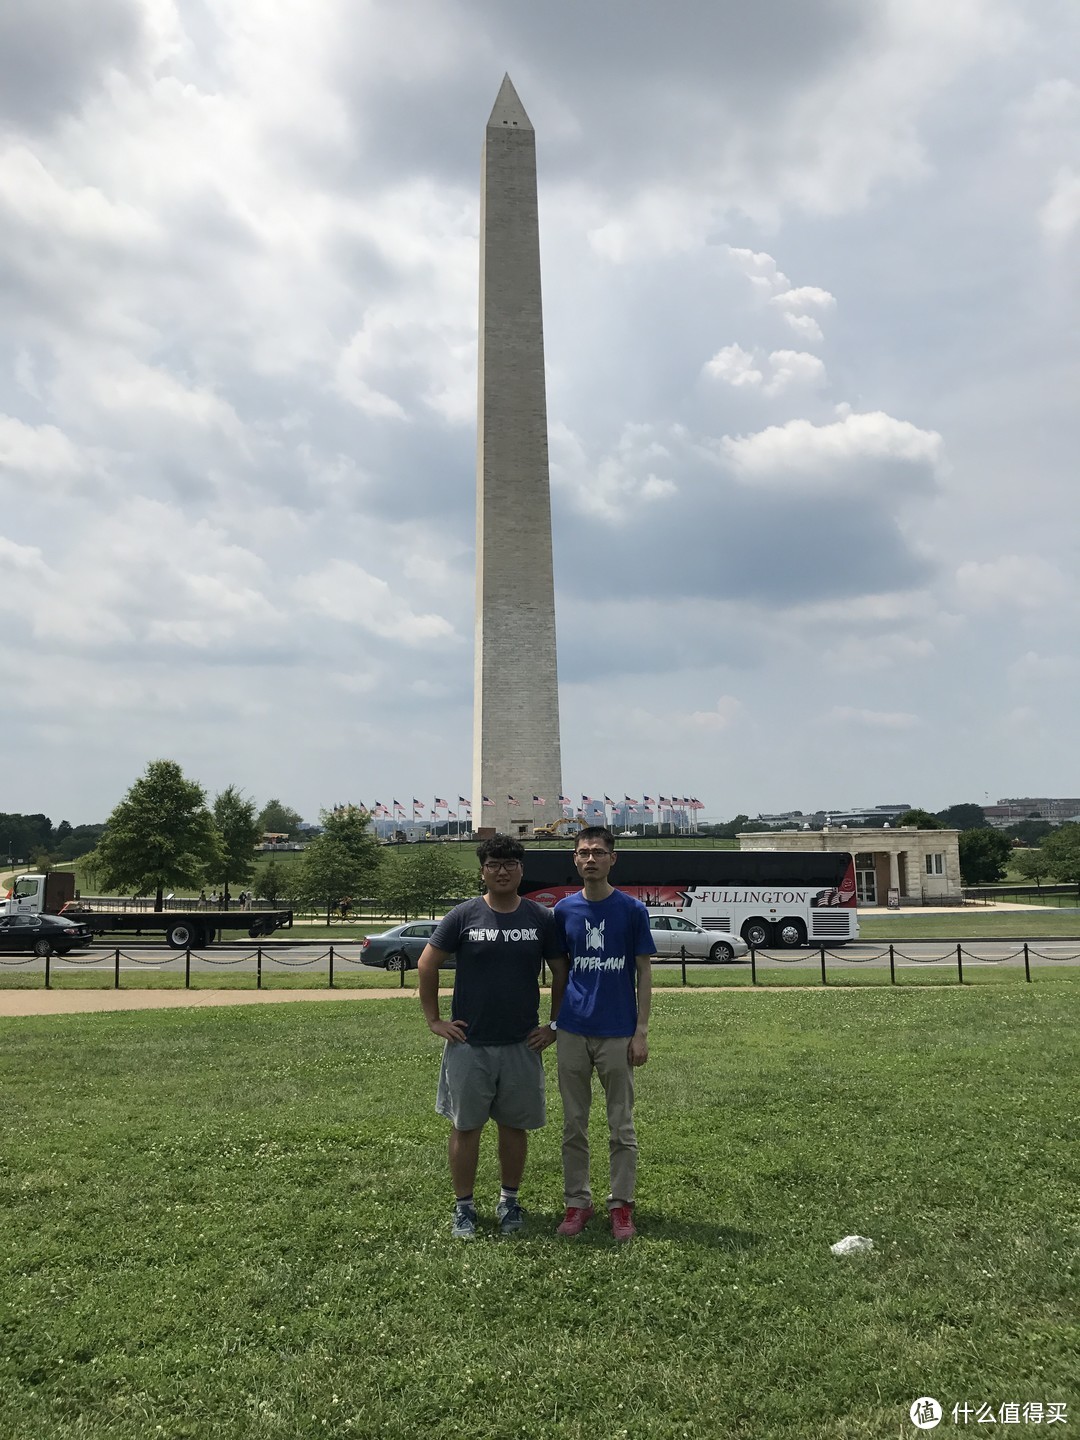 修缮中的华盛顿纪念碑